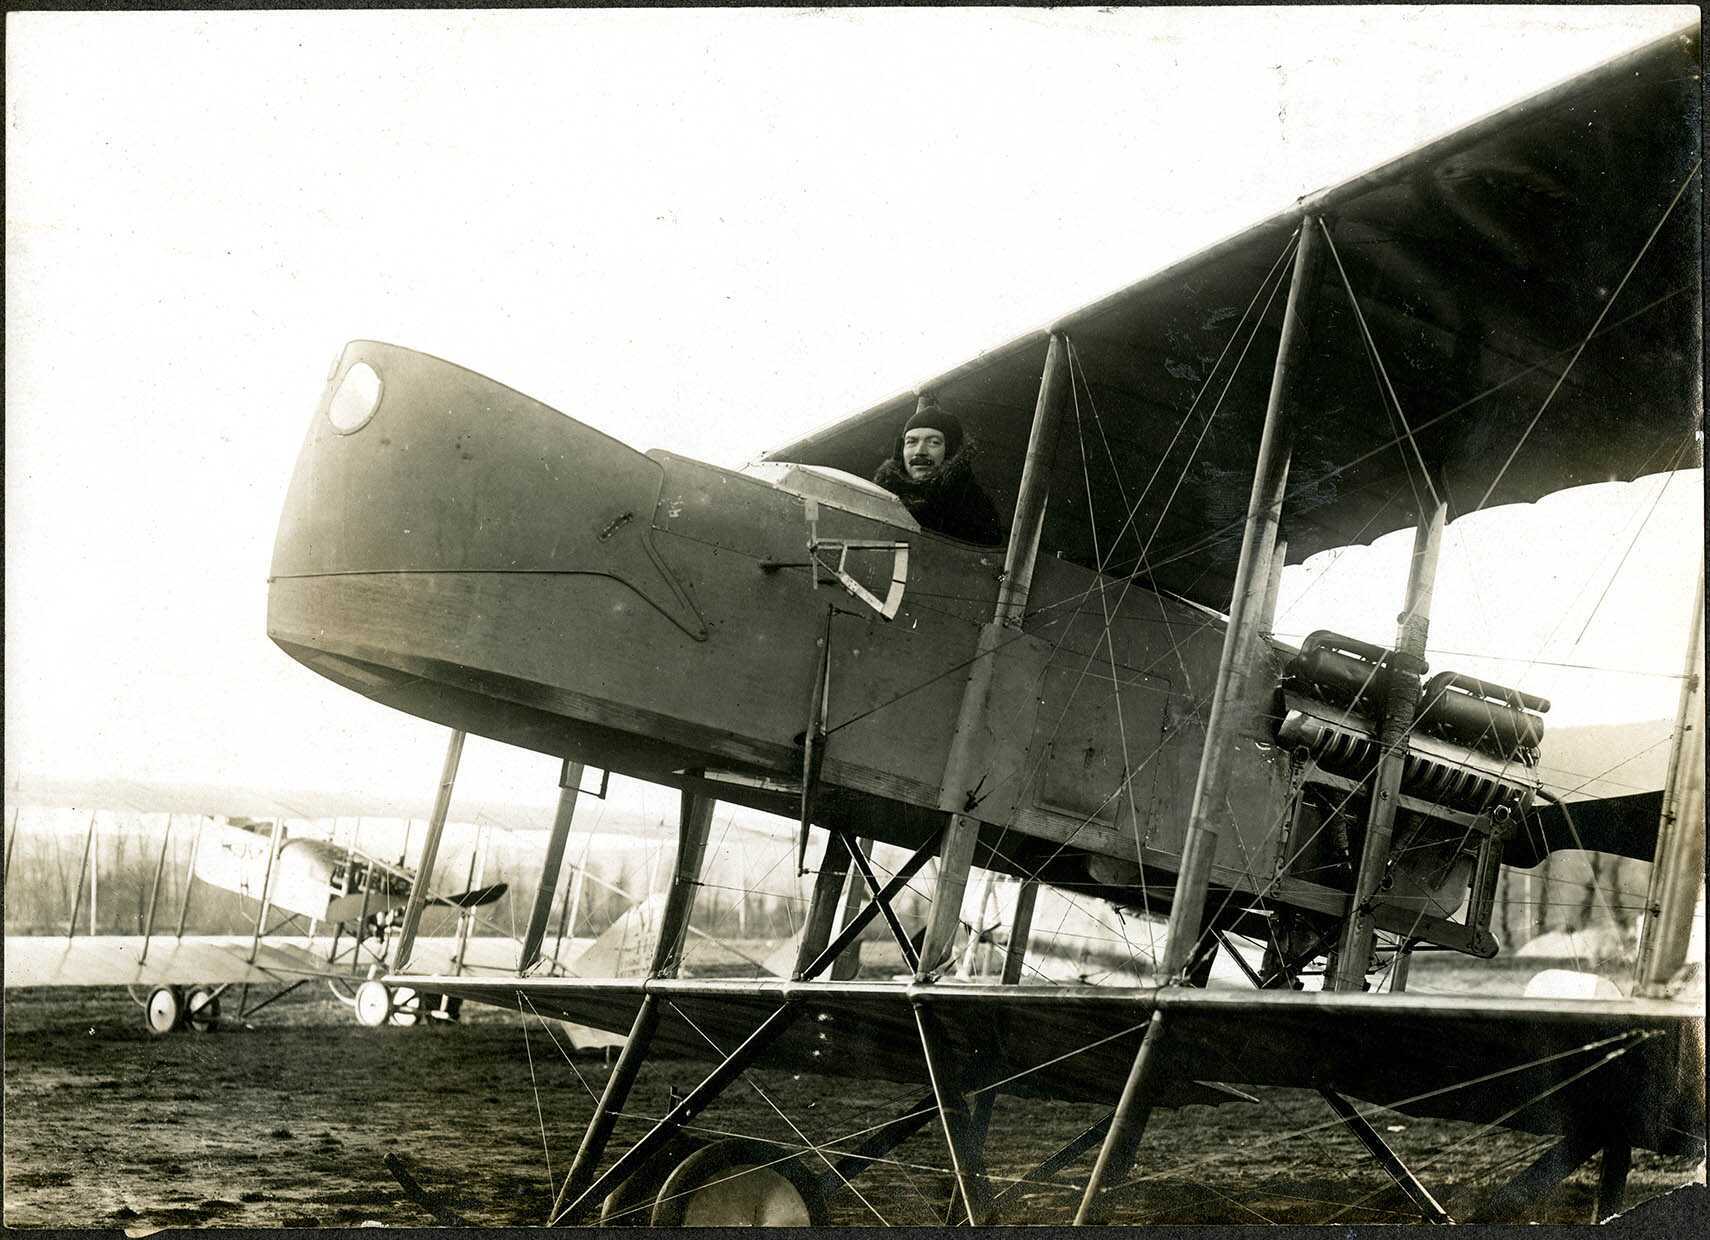 Belfort, Centre aéronautique militaire, Champ-de-Mars (Parc-à-Ballons), un avion de reconnaissance et bombardier français.